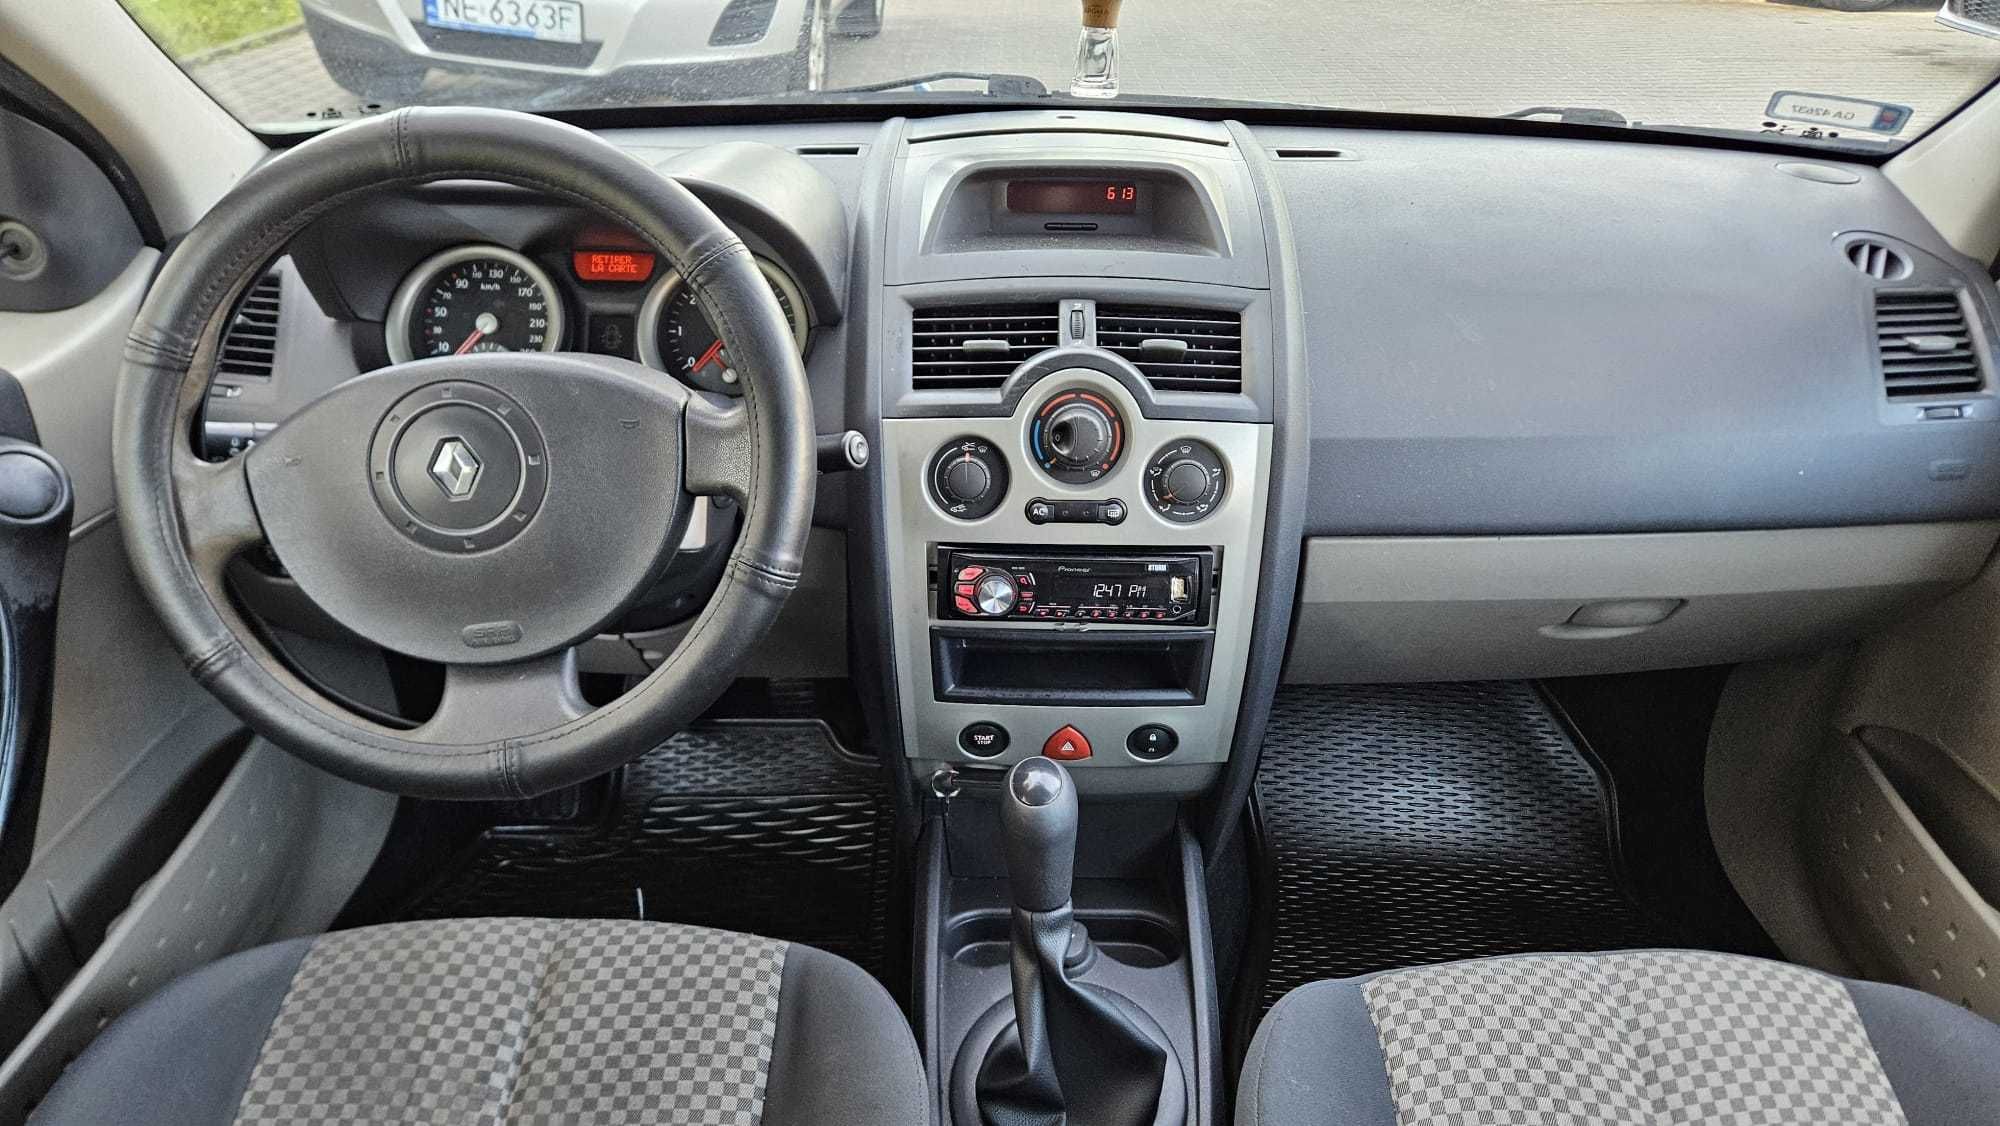 Renault Megane 2003r 1.4 16V- niski przebieg 166 tys,serwis na biezaco